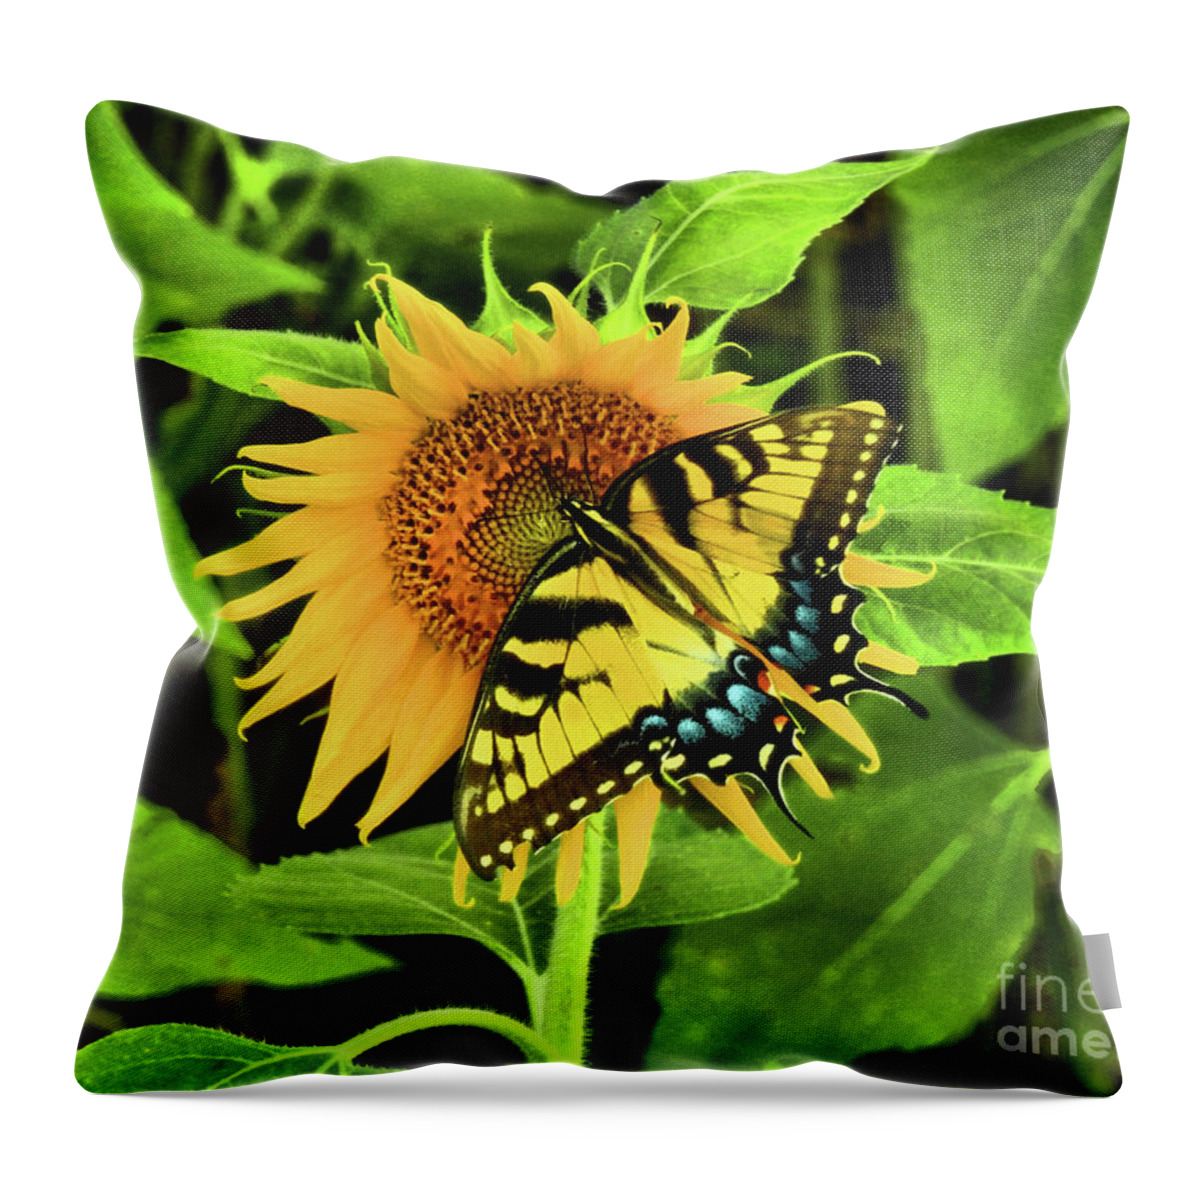 Swallowtail Butterflies Throw Pillow featuring the photograph Butterflies by Scott Cameron